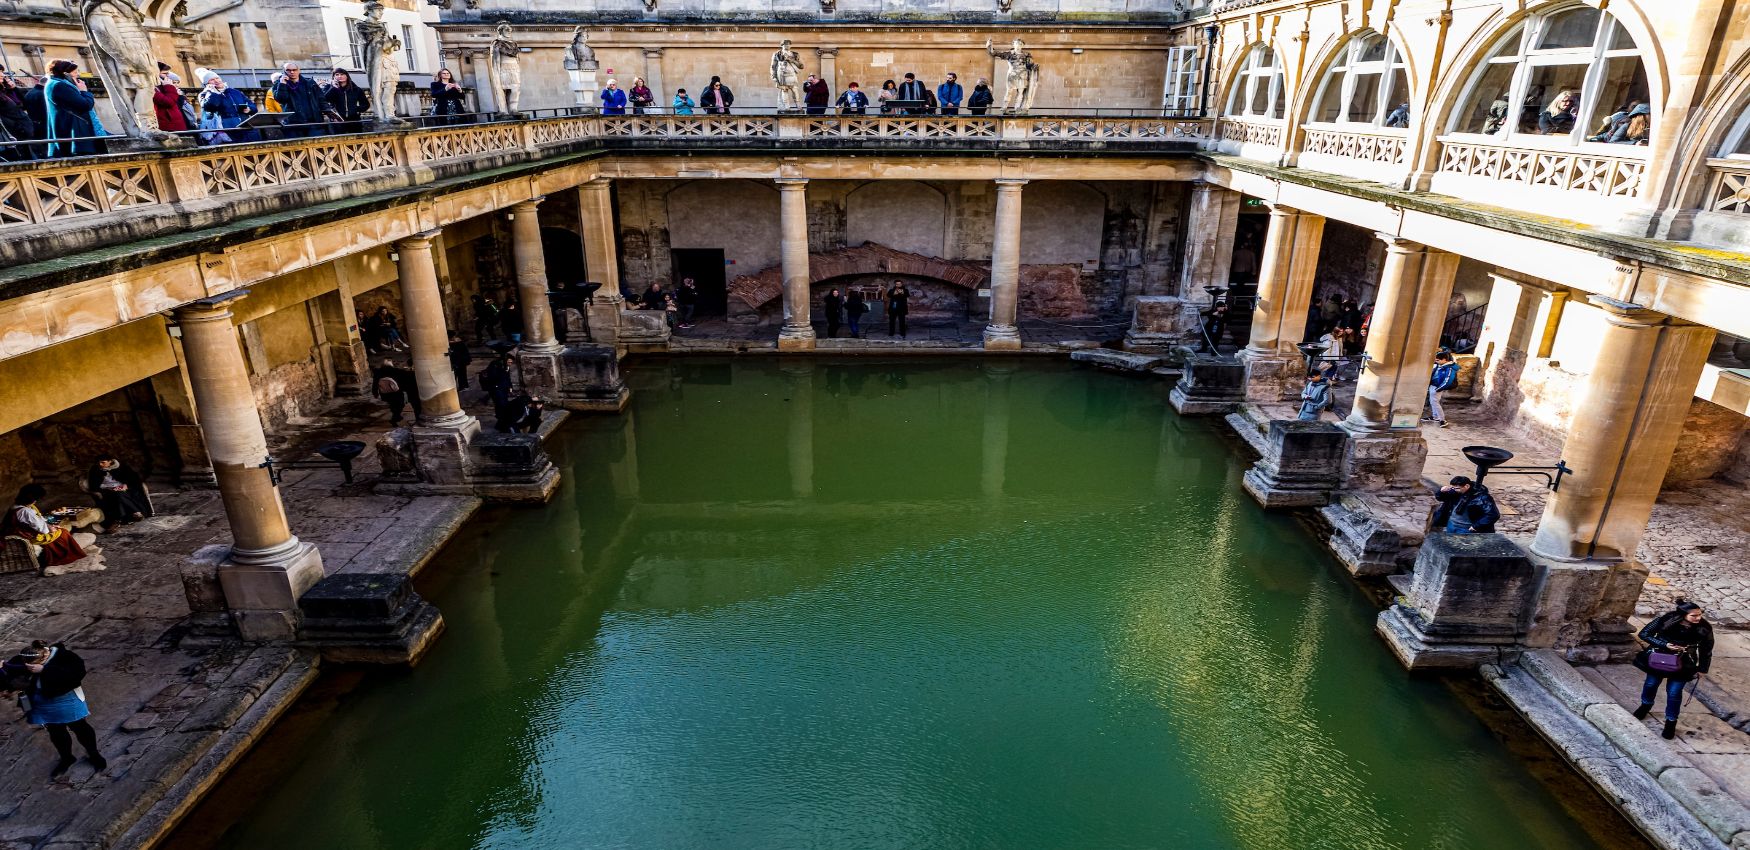 Historic landmark Roman Baths in Bath, England, UK